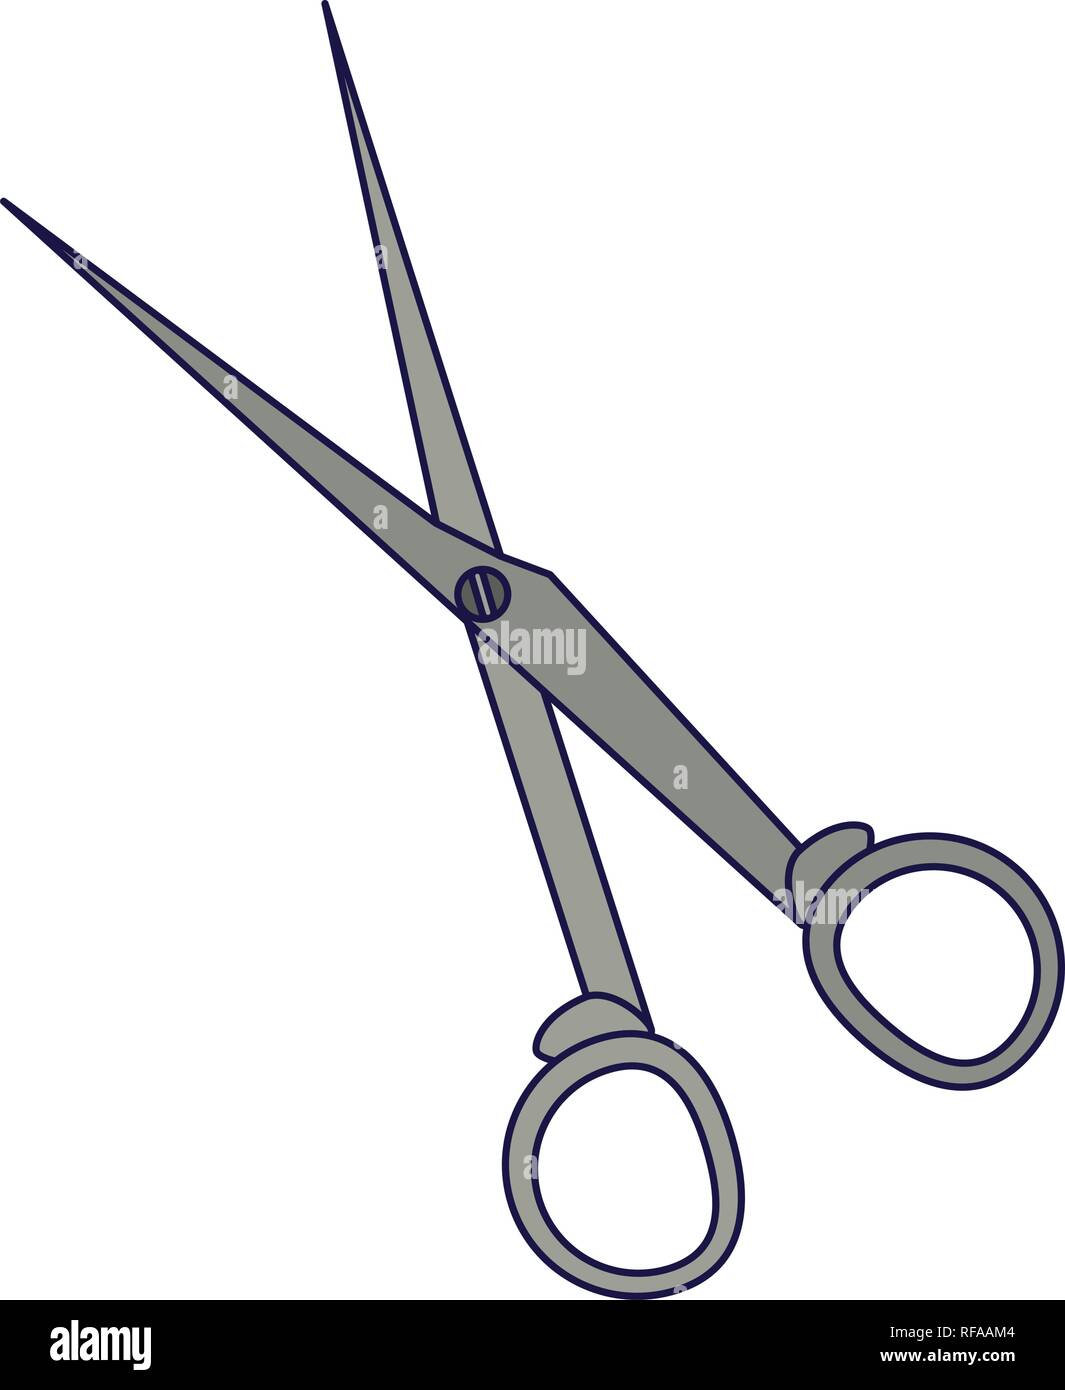 Chirurgische Scheren medizinische Werkzeug Stock Vektor